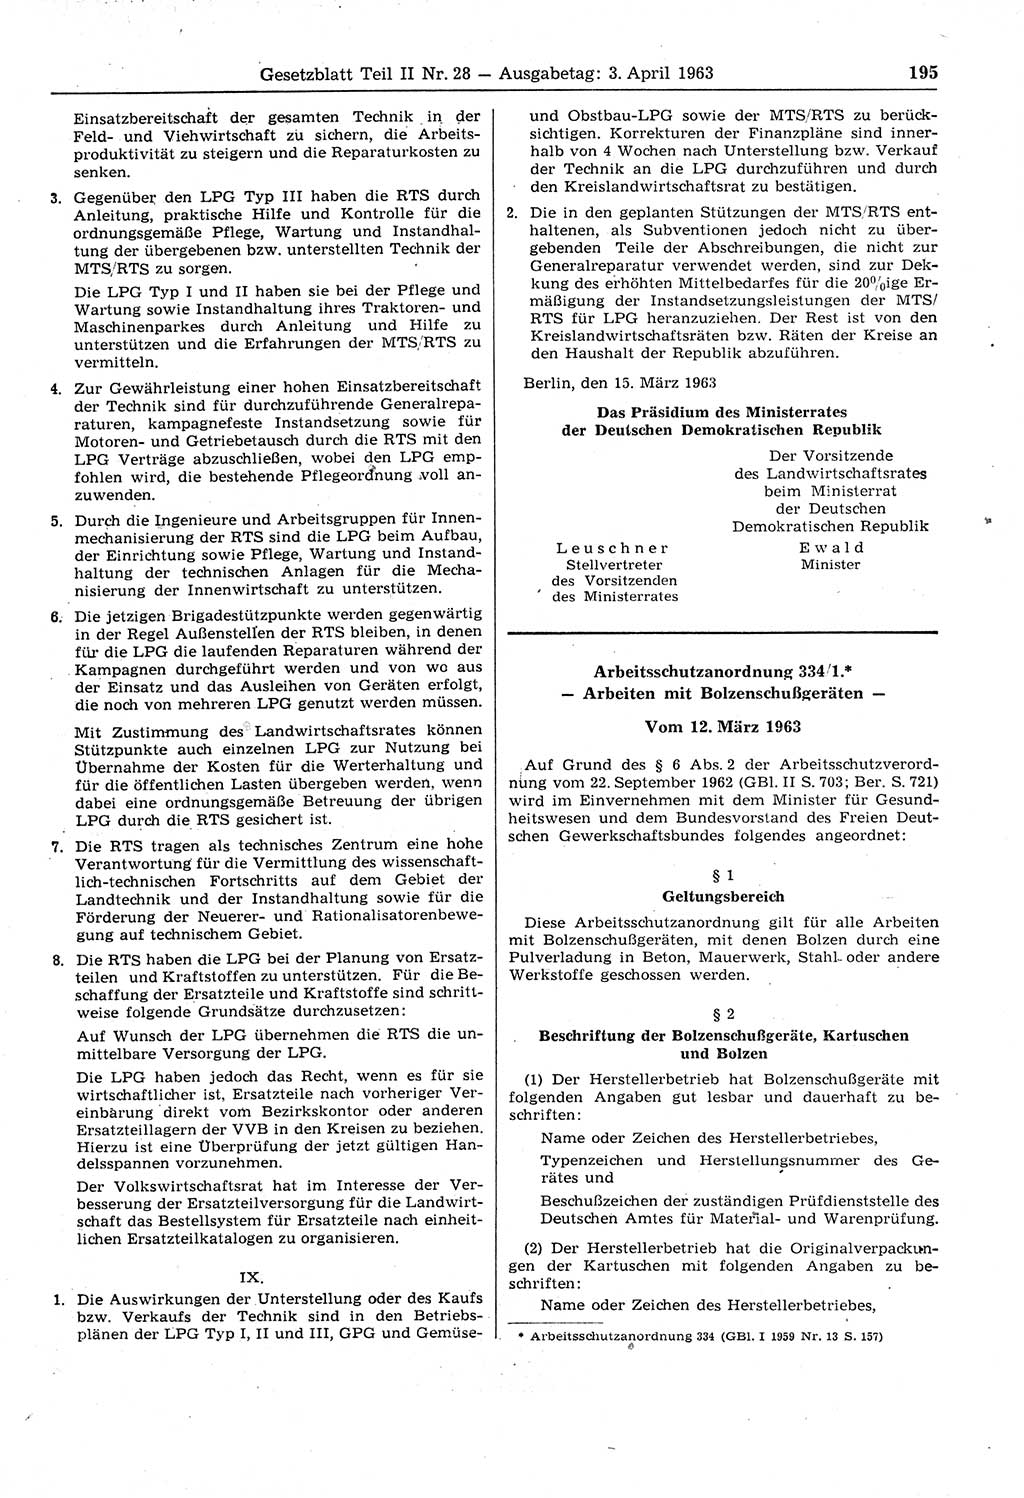 Gesetzblatt (GBl.) der Deutschen Demokratischen Republik (DDR) Teil ⅠⅠ 1963, Seite 195 (GBl. DDR ⅠⅠ 1963, S. 195)